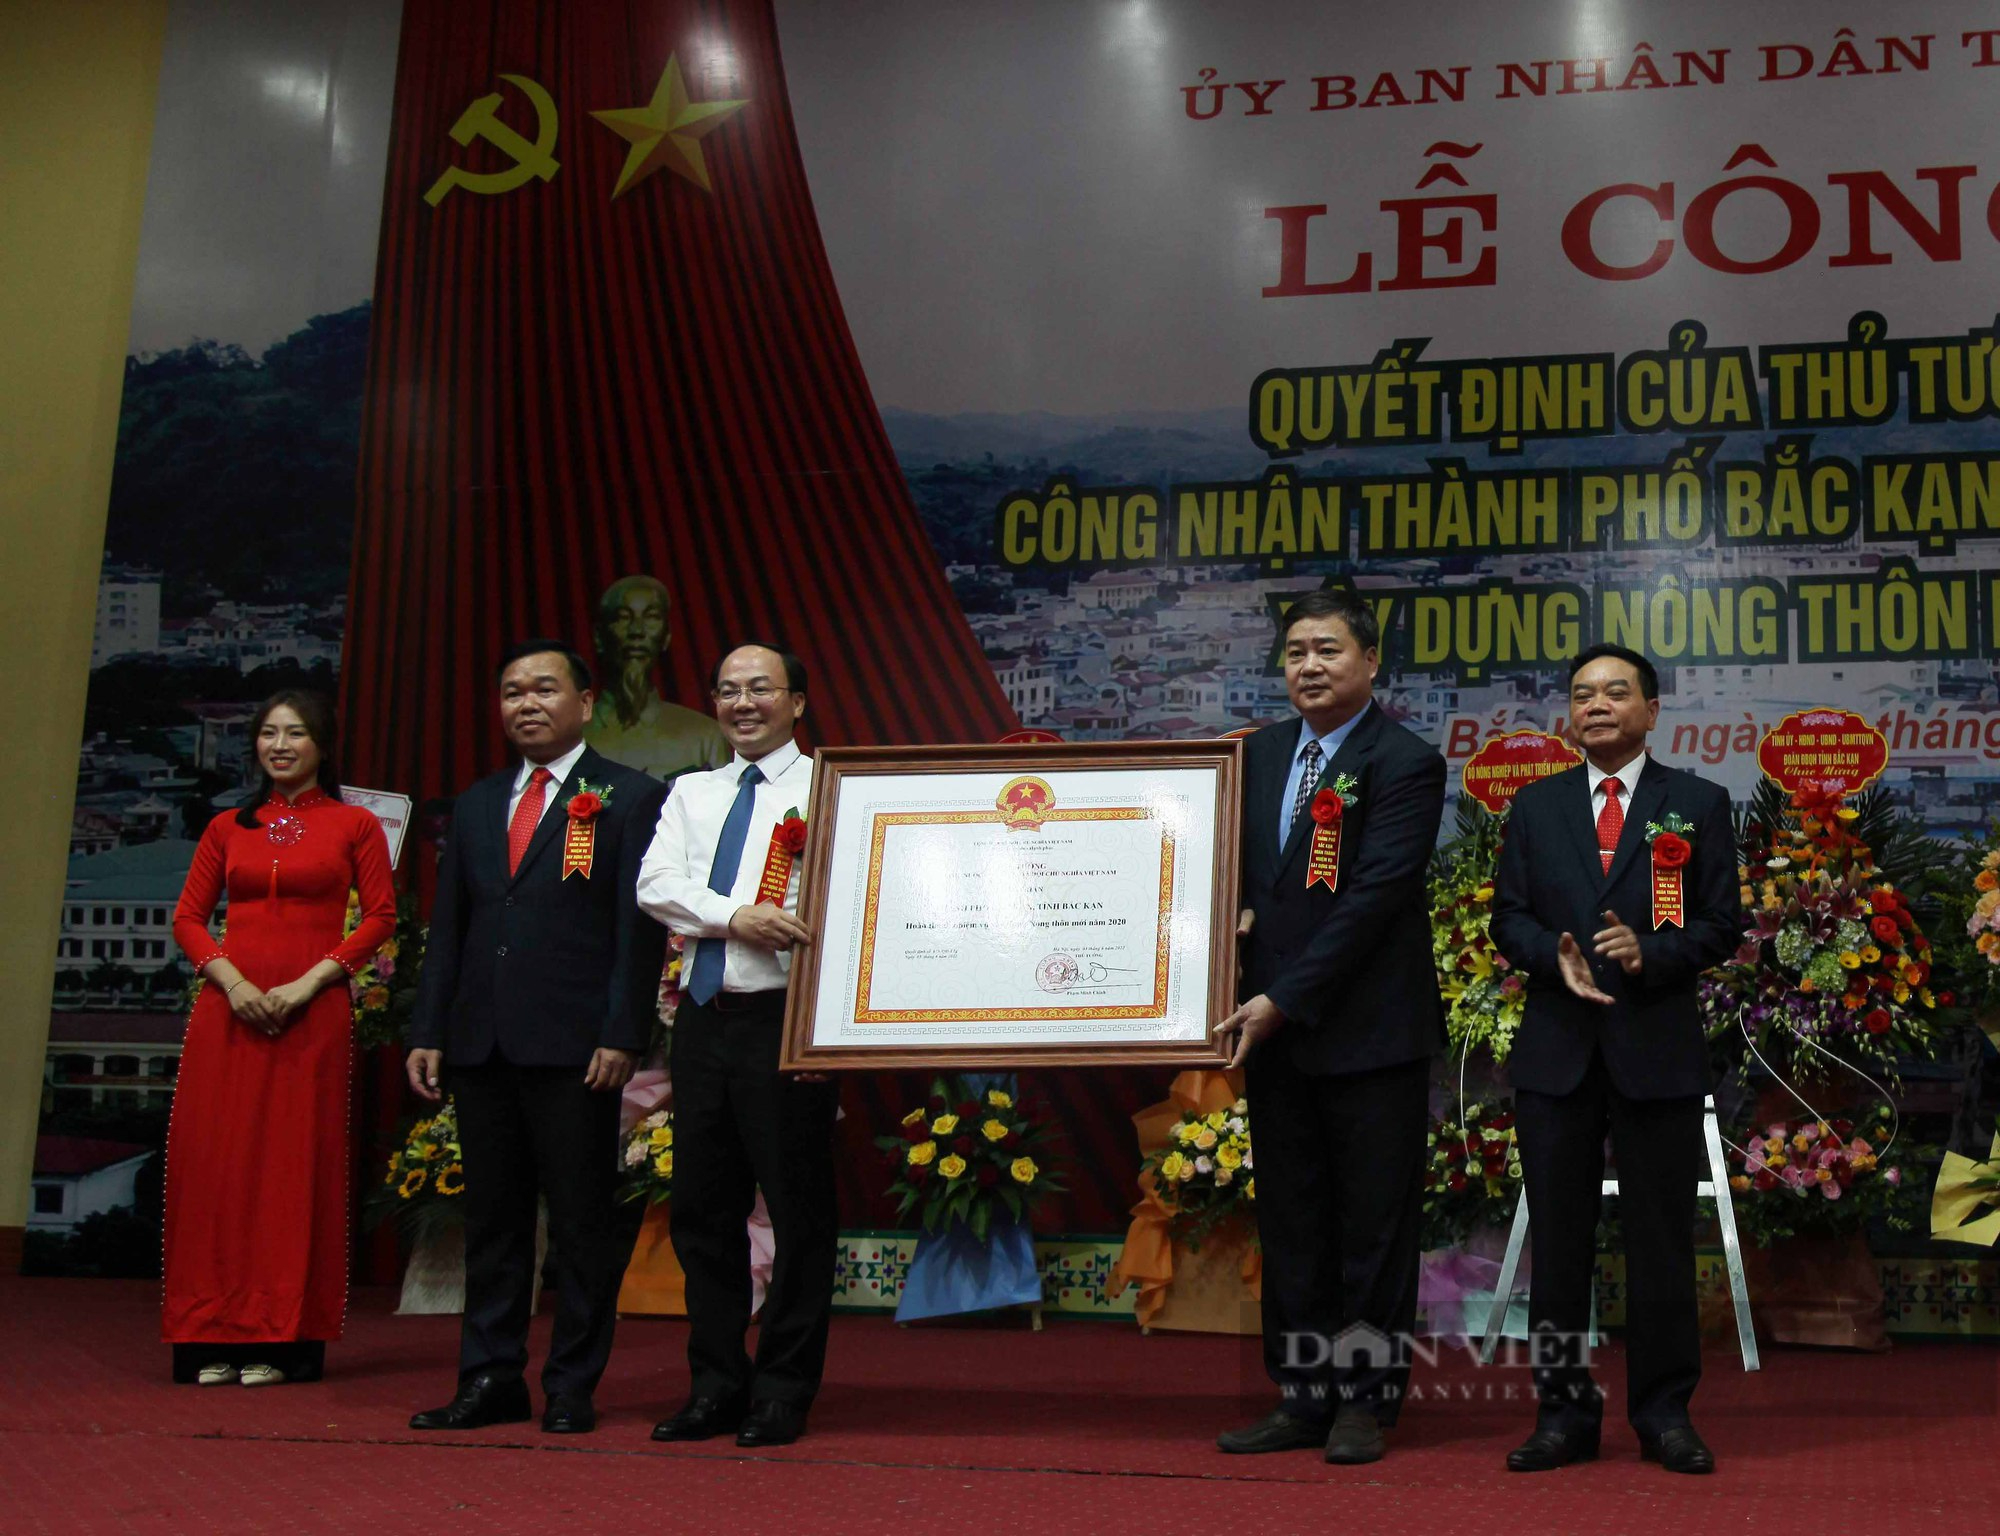 Đơn vị cấp huyện đầu tiên của tỉnh Bắc Kạn được công nhận hoàn thành nhiệm vụ xây dựng nông thôn mới - Ảnh 3.